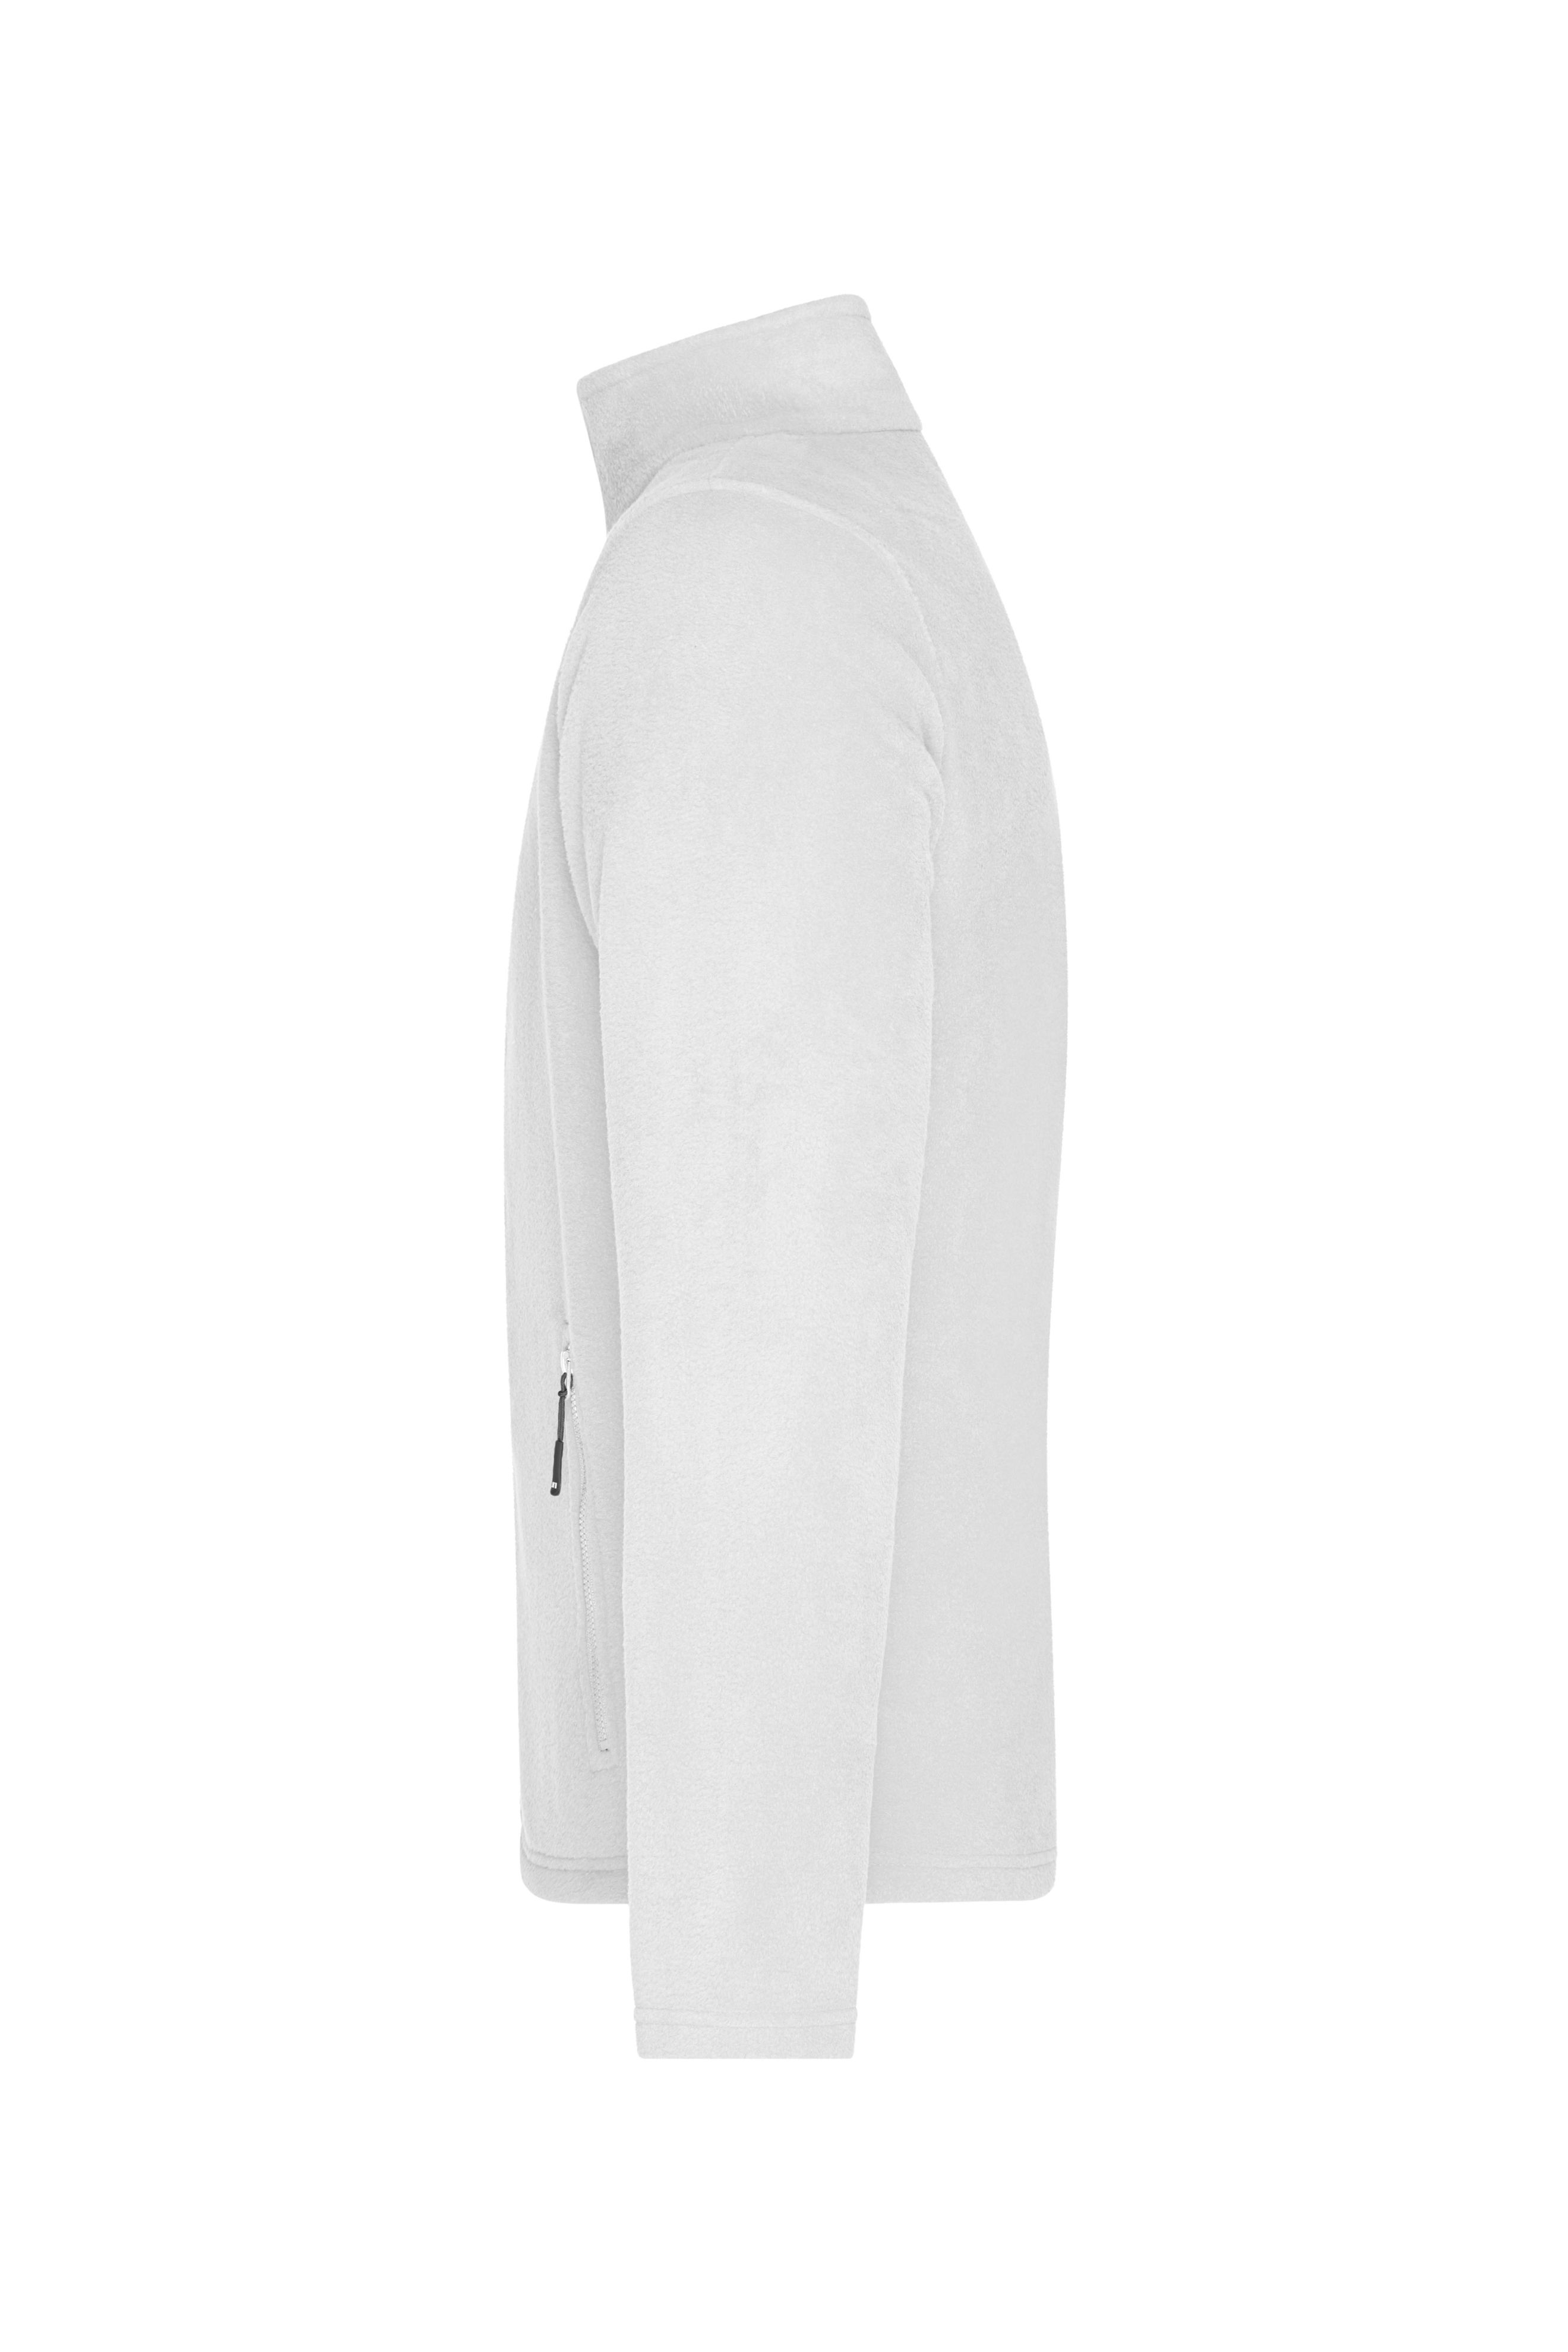 Men's Fleece Jacket JN782 Fleece Jacke mit Stehkragen im klassischen Design